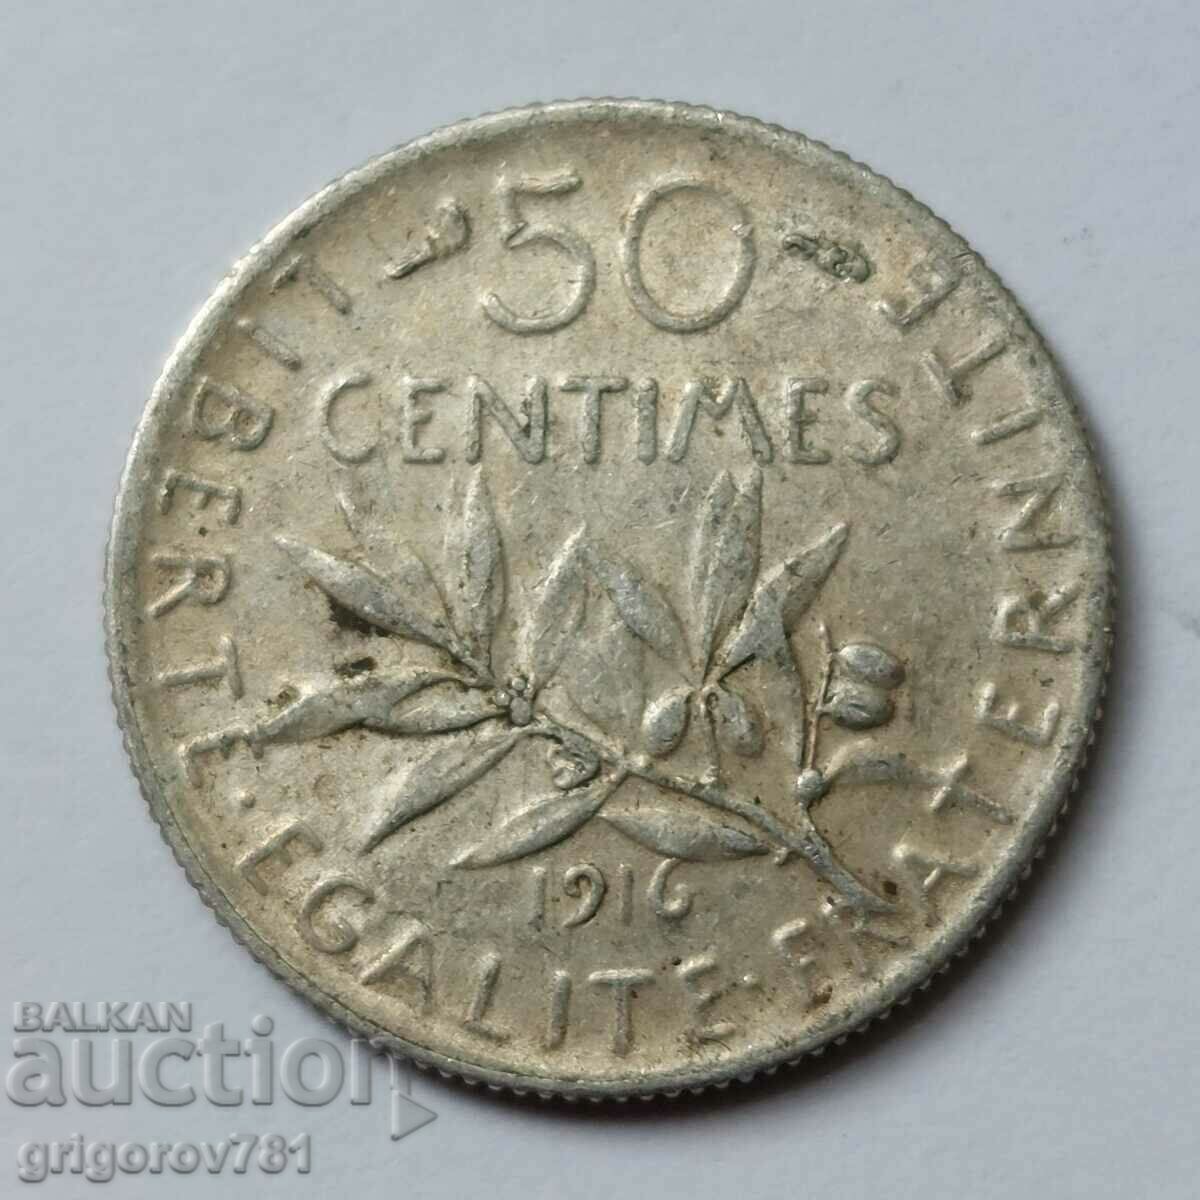 Ασημένιο 50 εκατοστά Γαλλία 1916 - ασημένιο νόμισμα №2